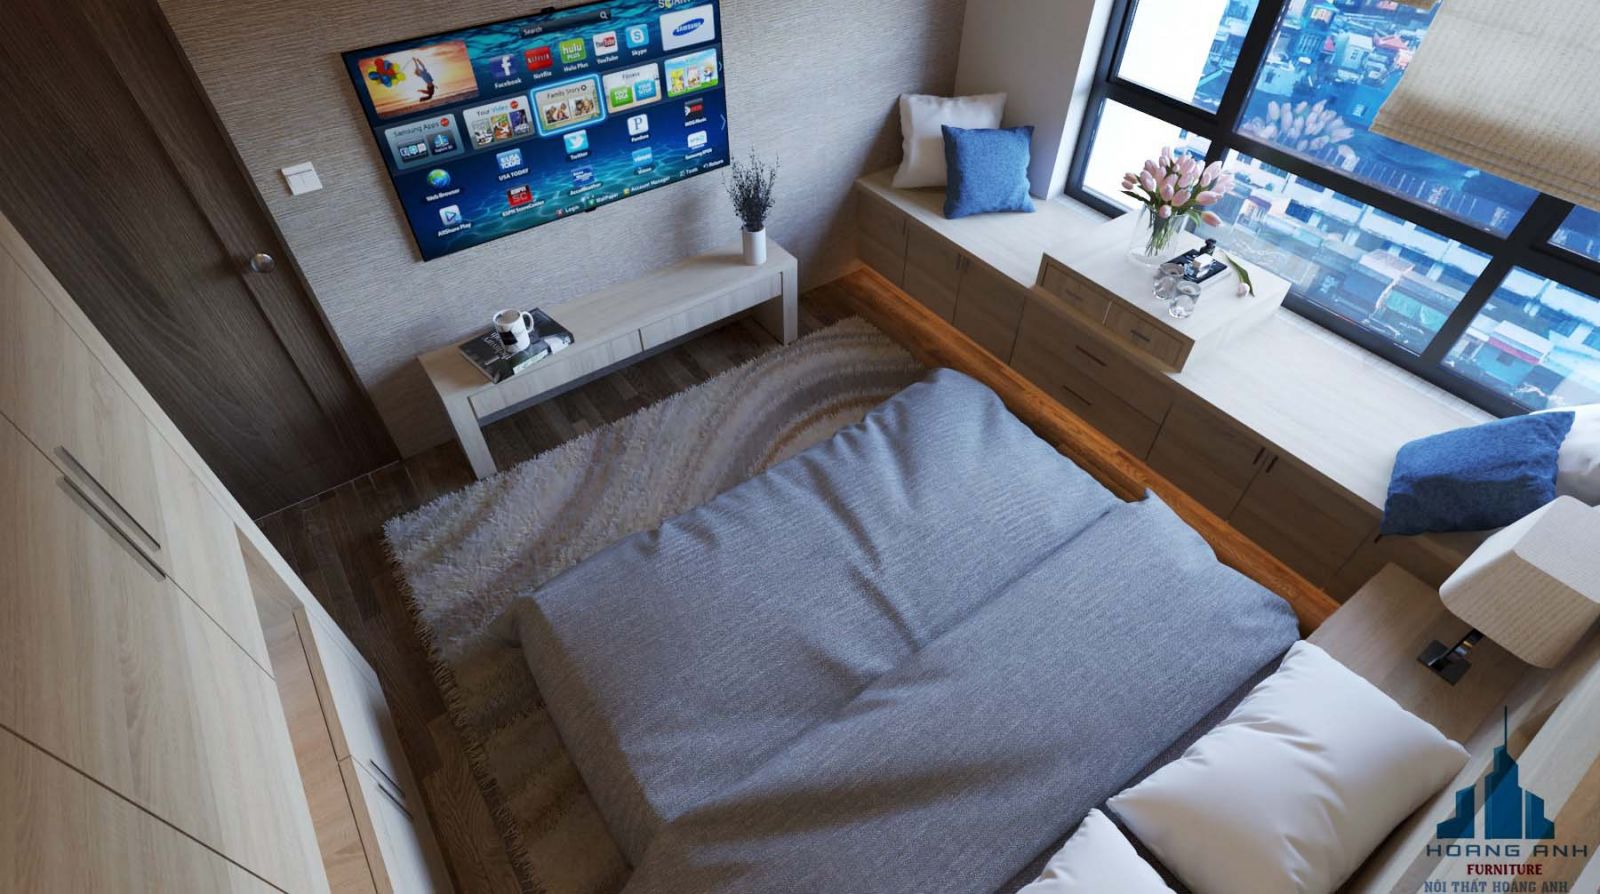 Sử dụng các đồ nội thất có tính kết nối khoảng cách giúp cho phòng ngủ nhỏ của bạn trở nên gọn gàng hơn